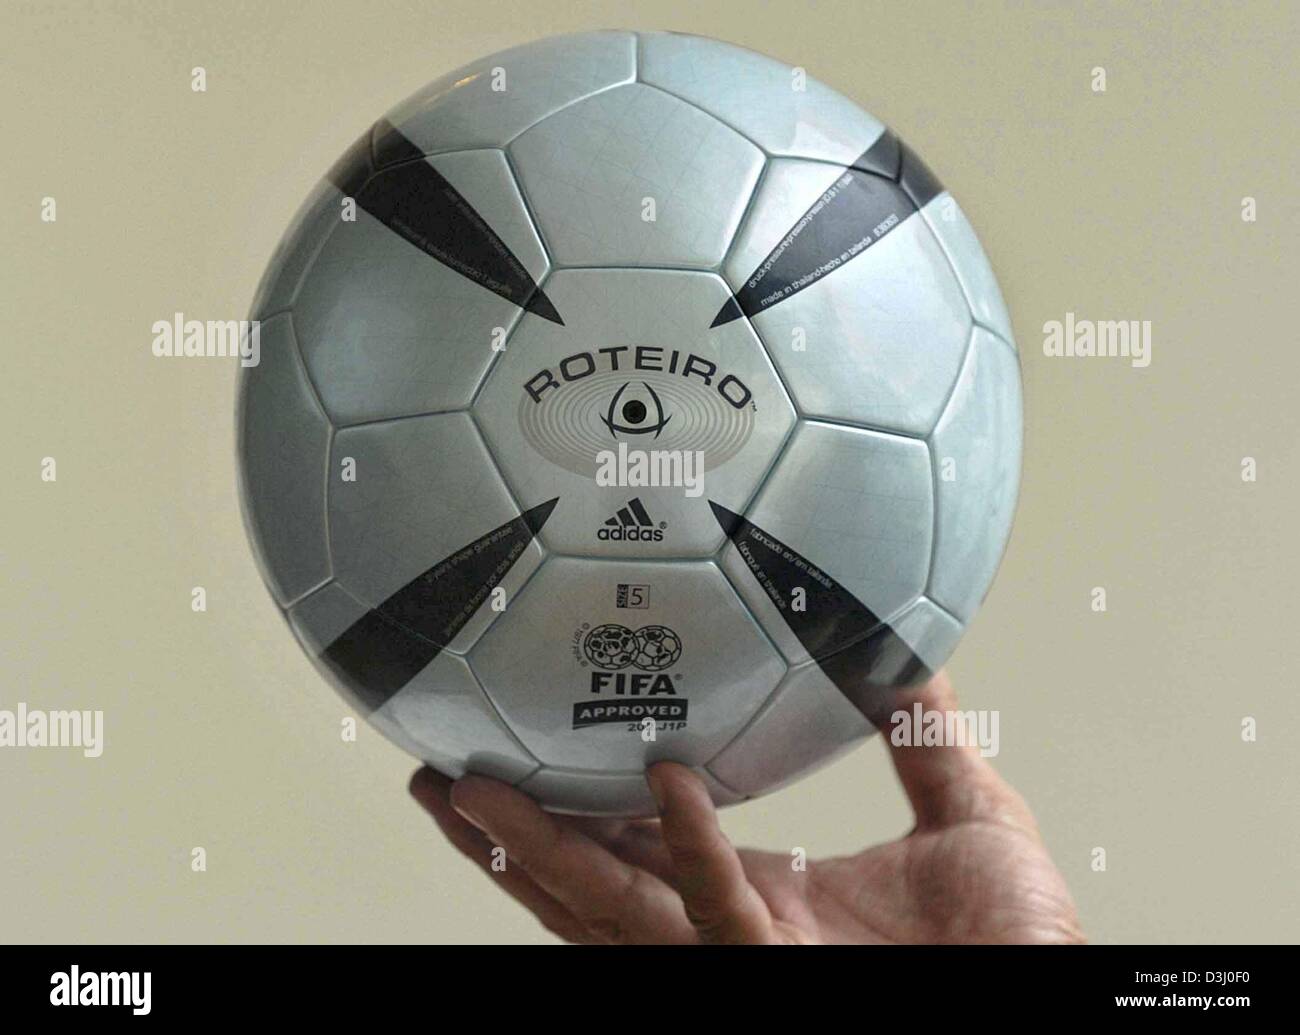 Dpa) - El balón oficial para el campeonato de fútbol Euro 2004, denominada " Roteiro', se presenta en Almancil, cerca de Faro, en Portugal, el 28 de  noviembre de 2003. El campeonato Euro